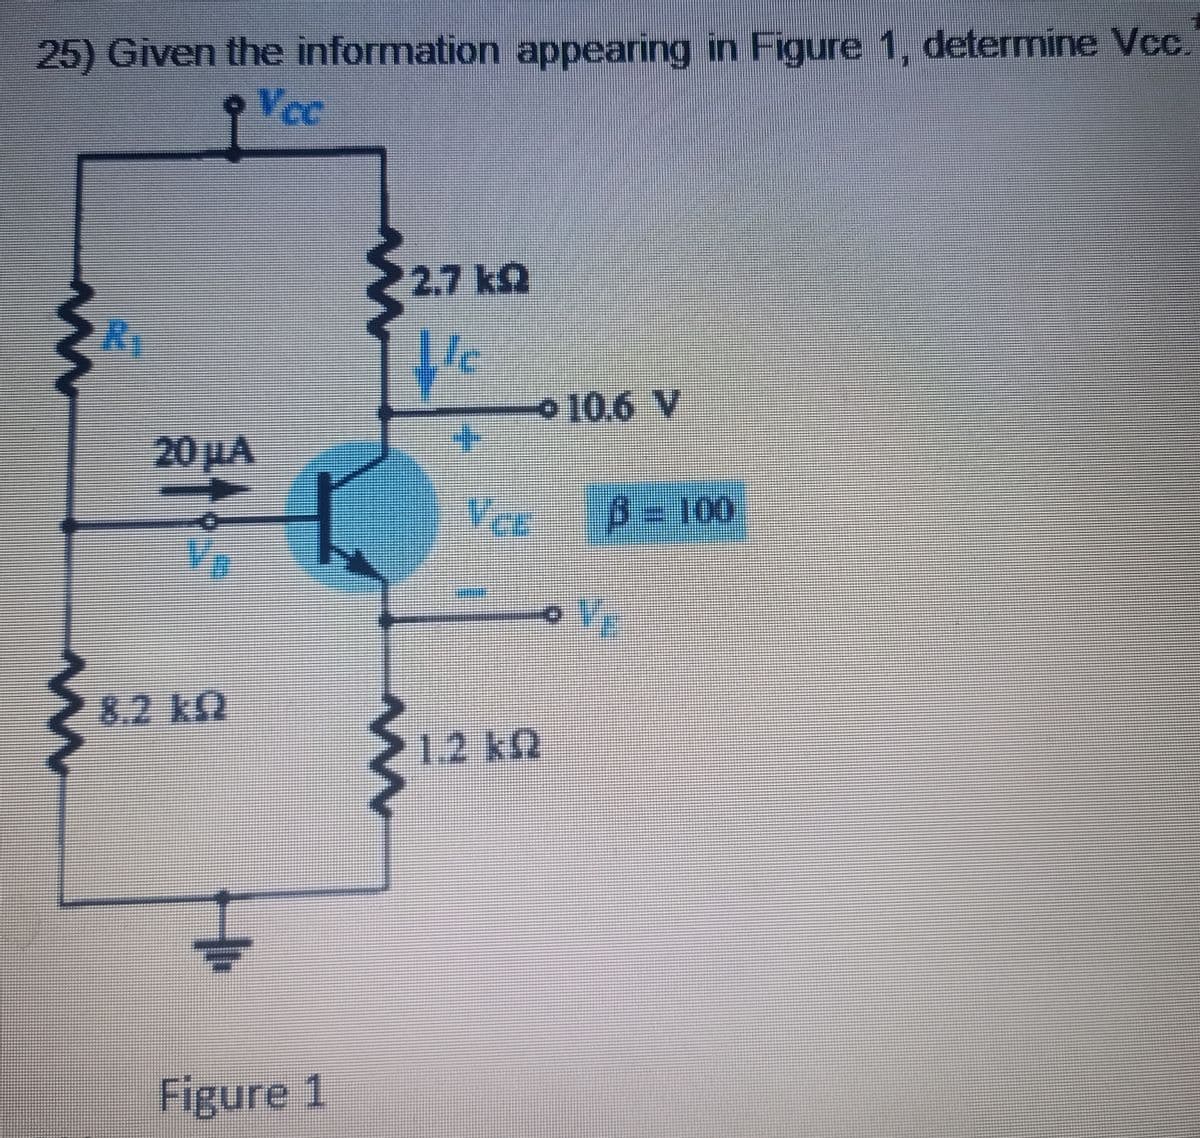 25) Given the information appearing in Figure 1, determine Vcc.
Vec
R₁
8.2 k
Figure 1
N
2.7 kg
Je
+
Vec
1.2 kn
10.6 V
В - 100